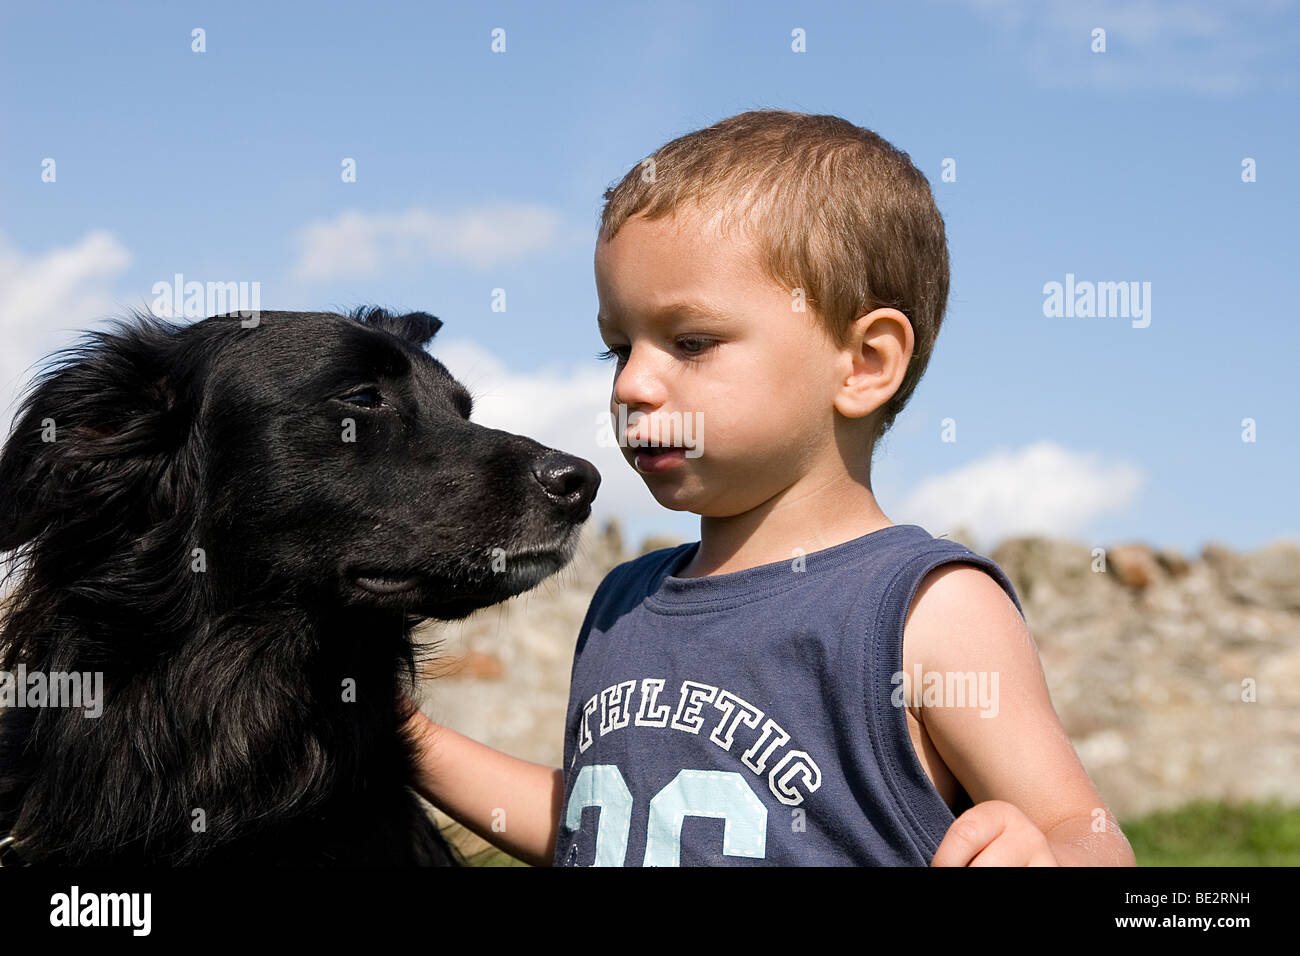 Bébé Garçon jouant avec son animal cross border collie dog outdoors Banque D'Images